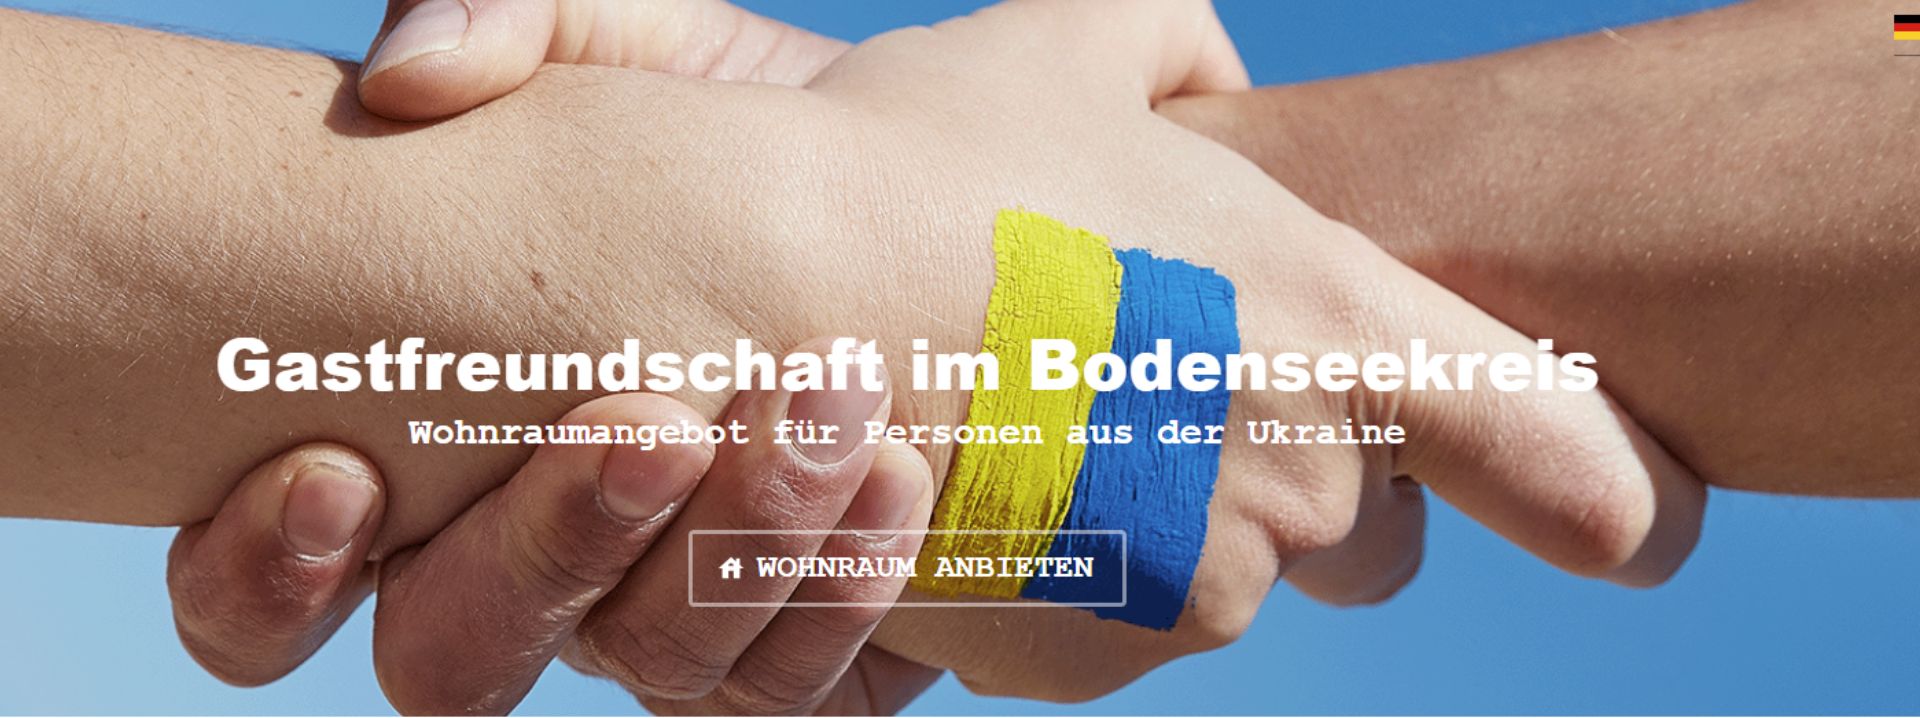 Screenshot der Webseite: Zwei Hände umfassen einander. Auf einer Hand ist die Flagge der Ukraine gemalt.